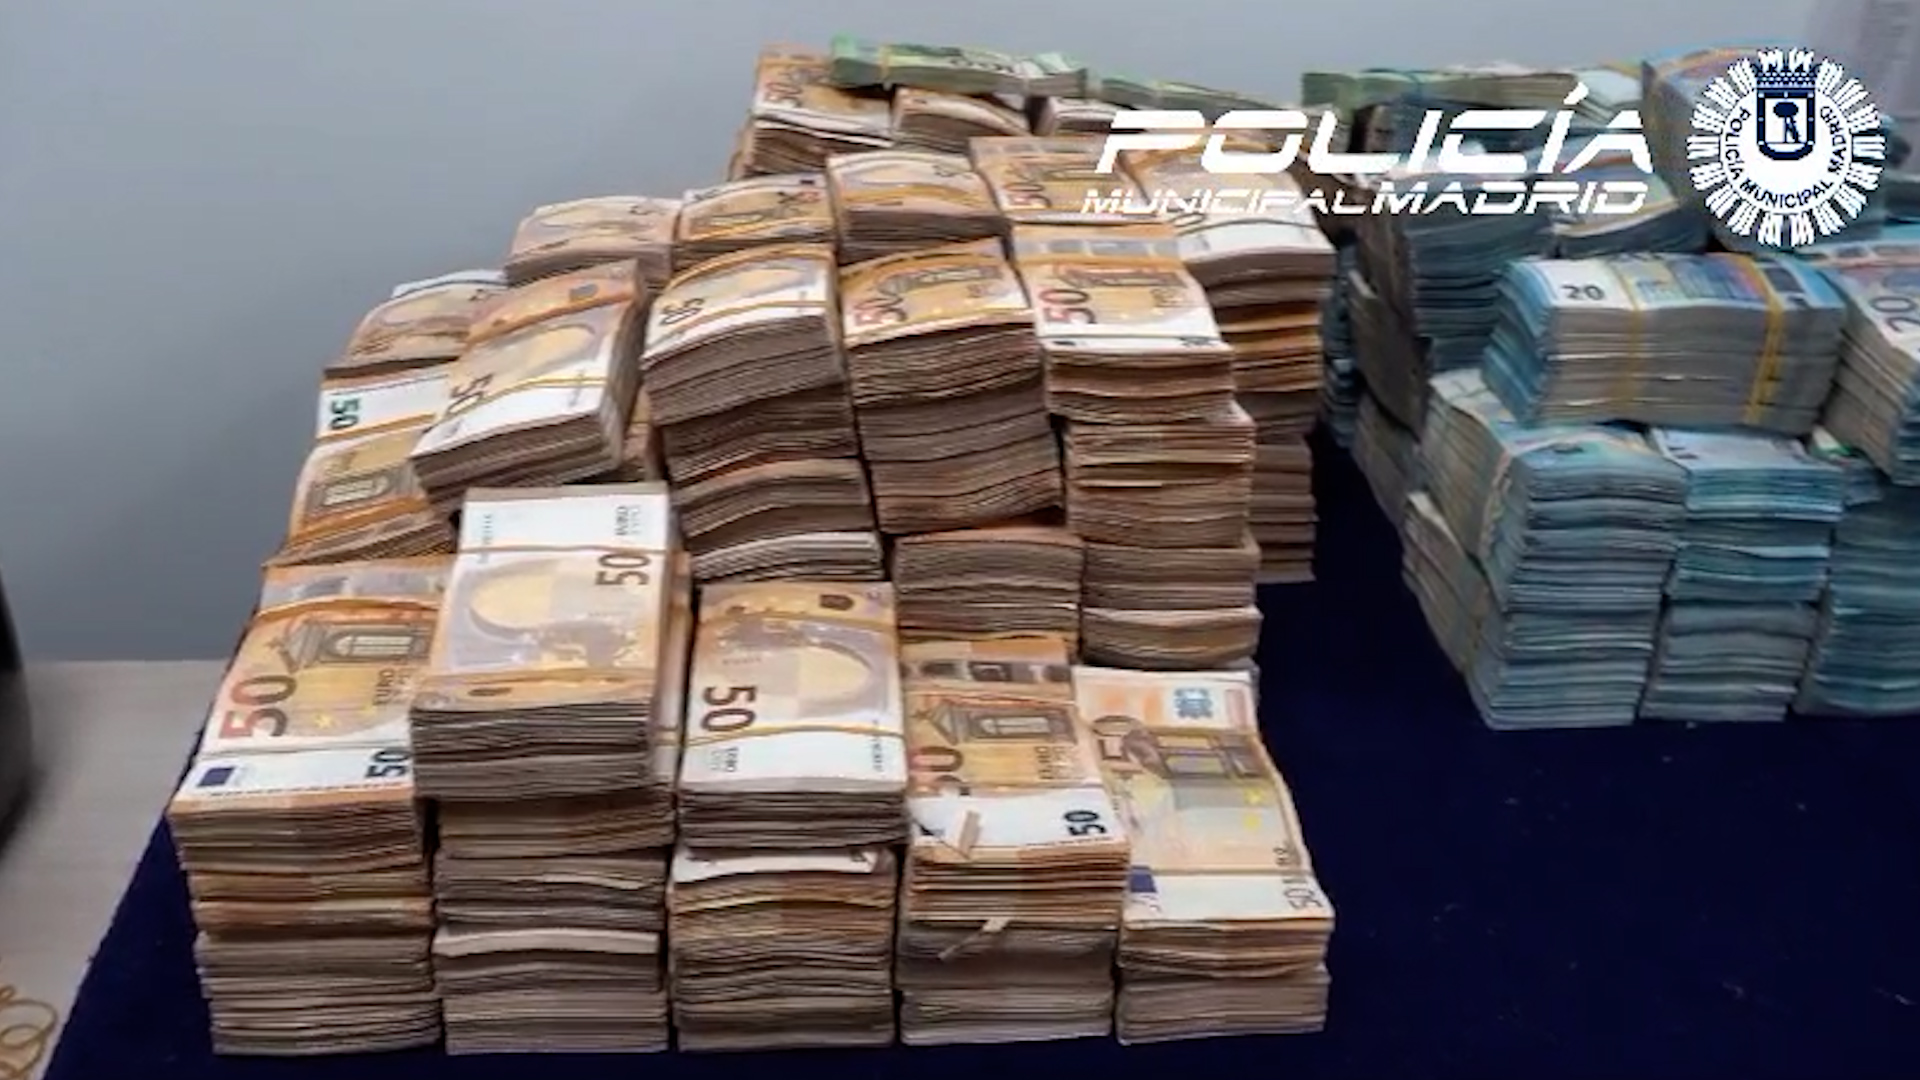 La Policía Municipal descubre dos millones de euros en fajos de billetes en un VTC en el centro de Madrid